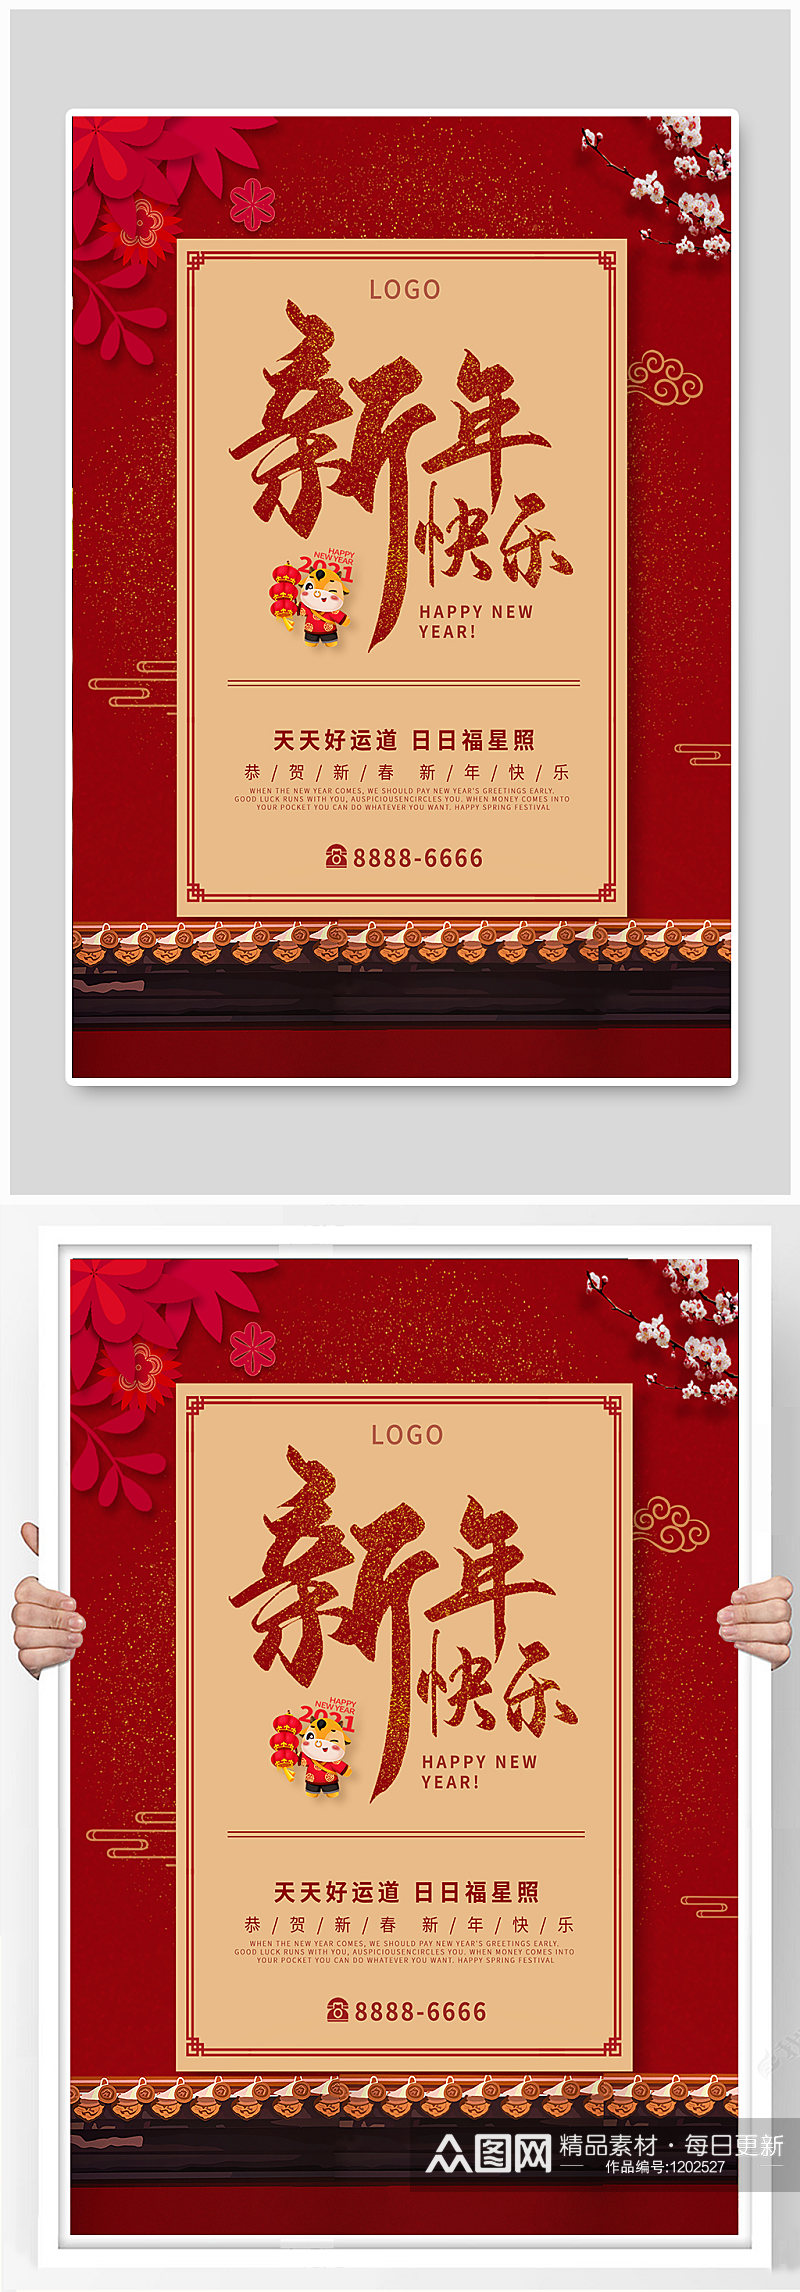 大气红色中国风新年快乐节日海报素材